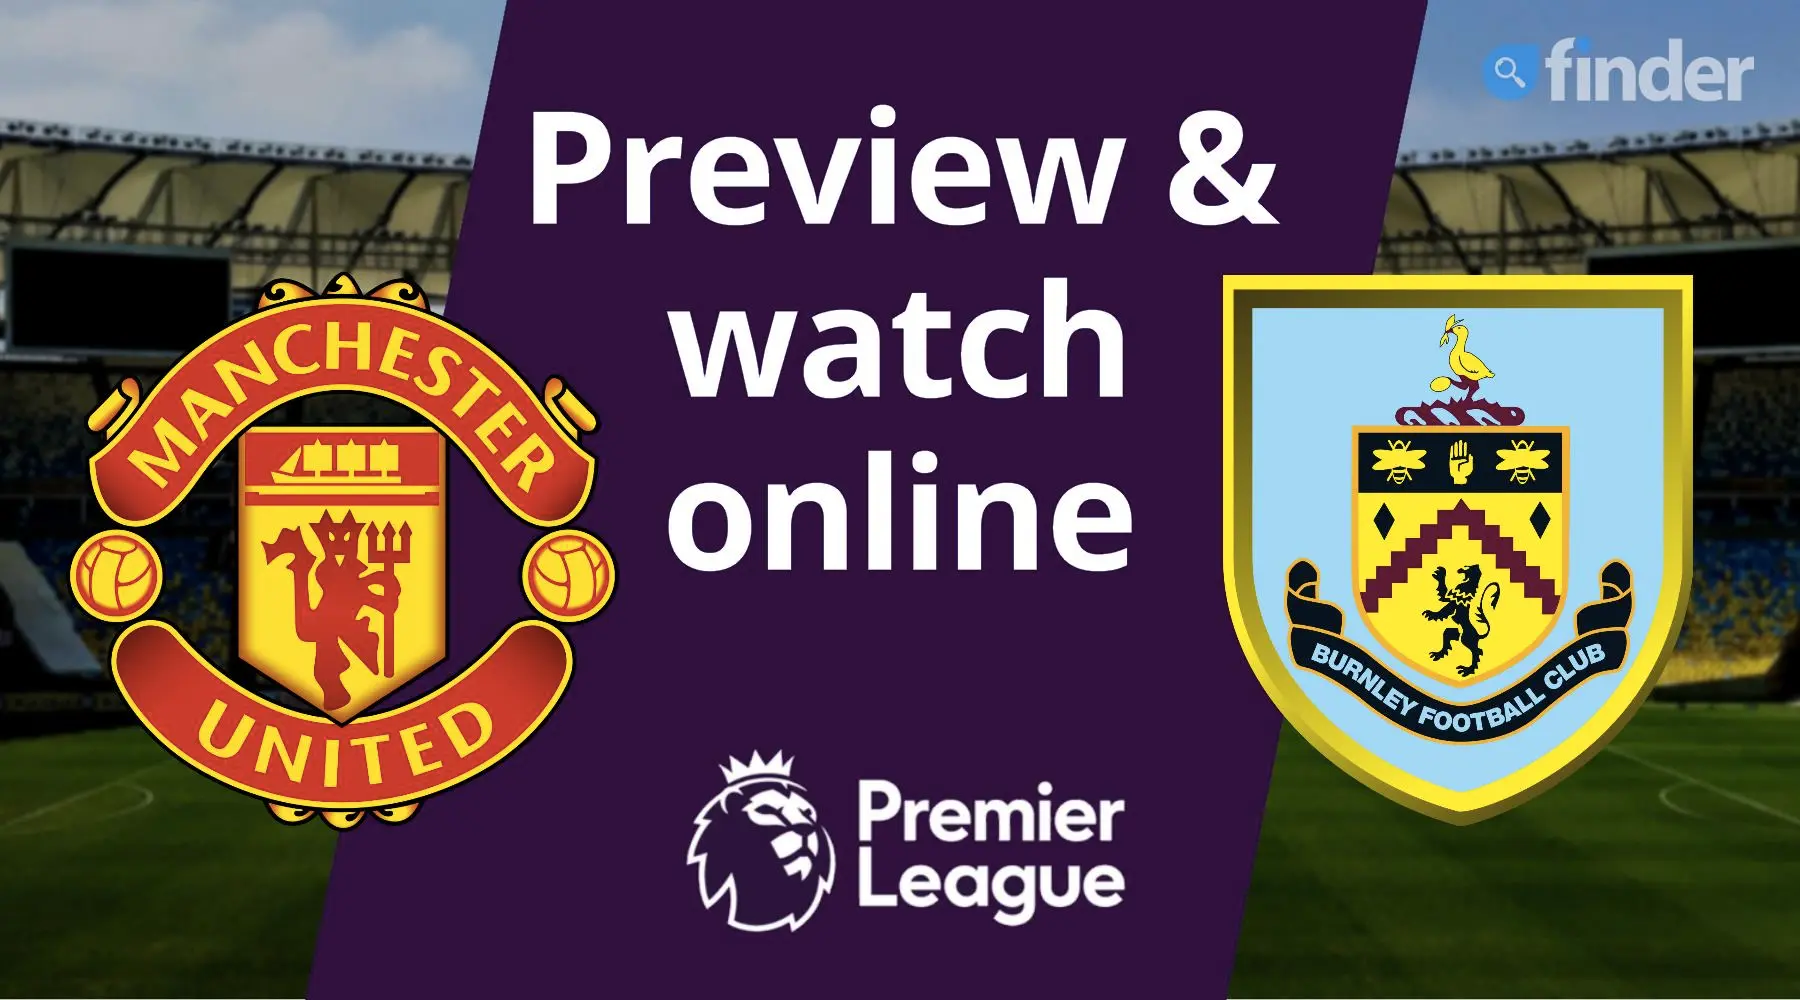 Watch Man United vs Burnley Premier League live online